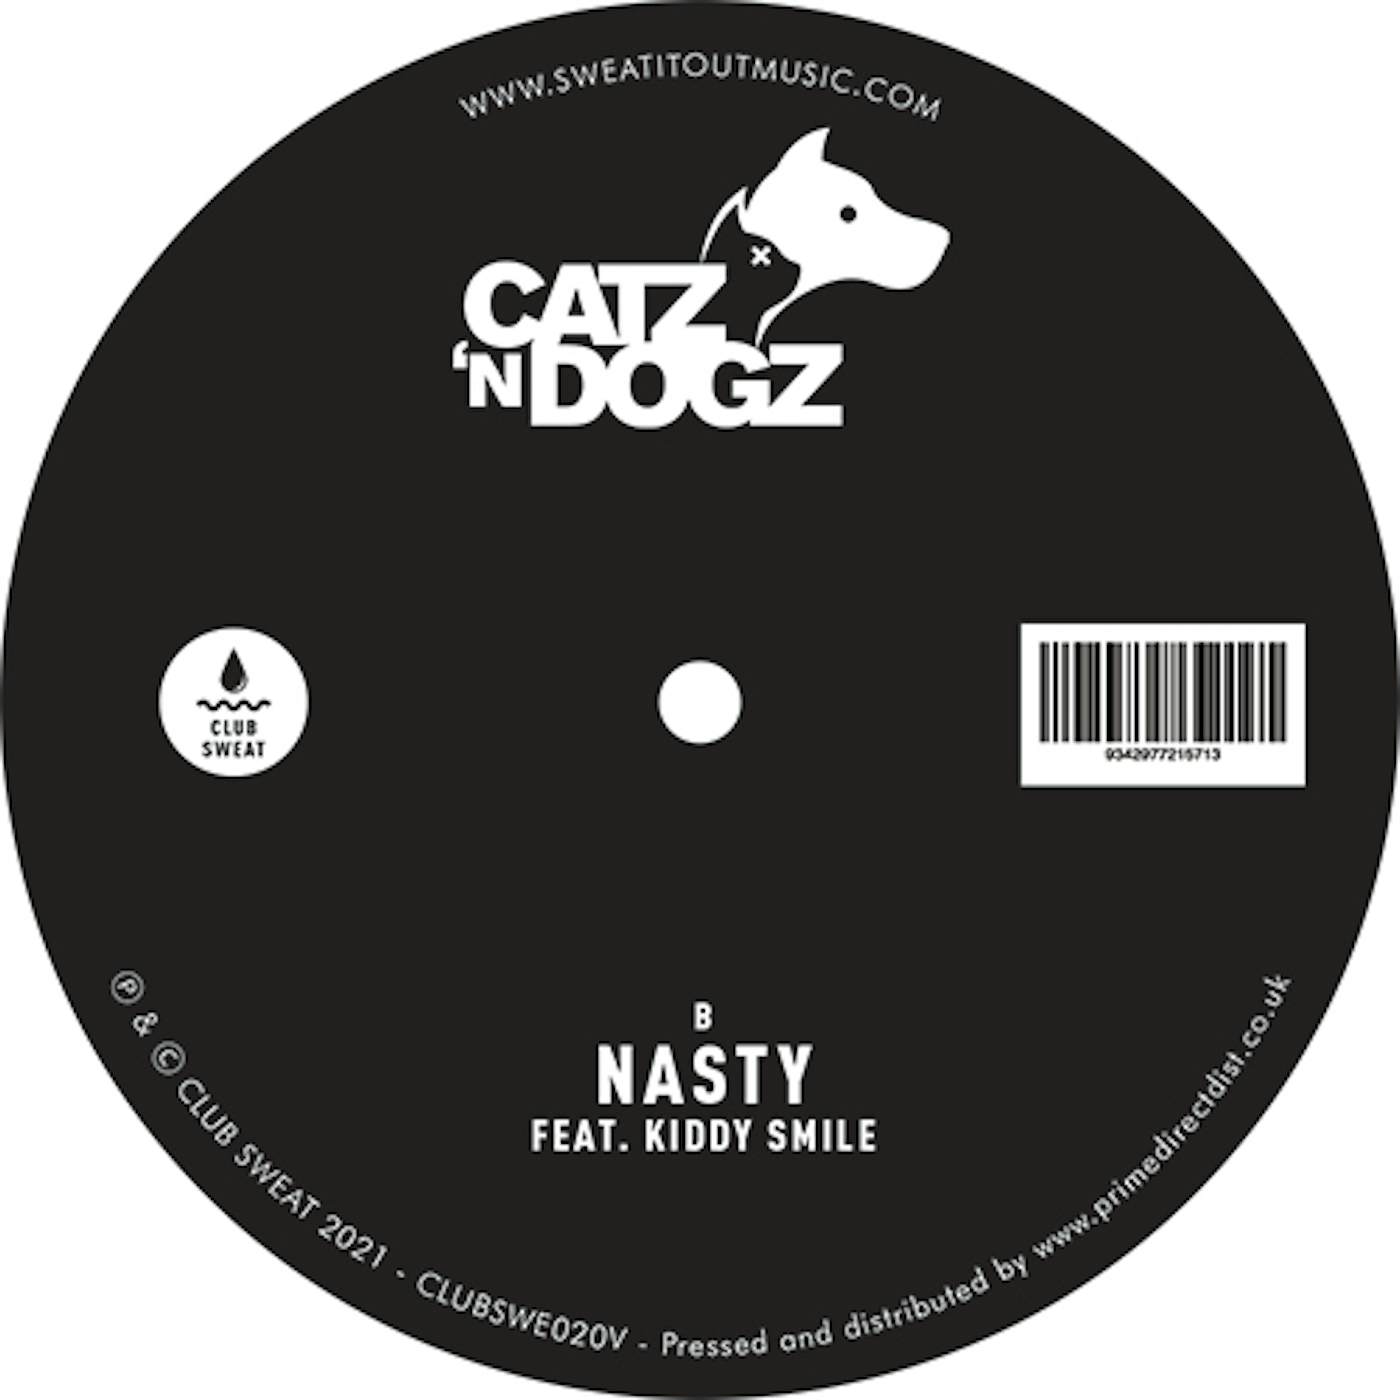 Catz 'n Dogz RENDEZVOUS Vinyl Record